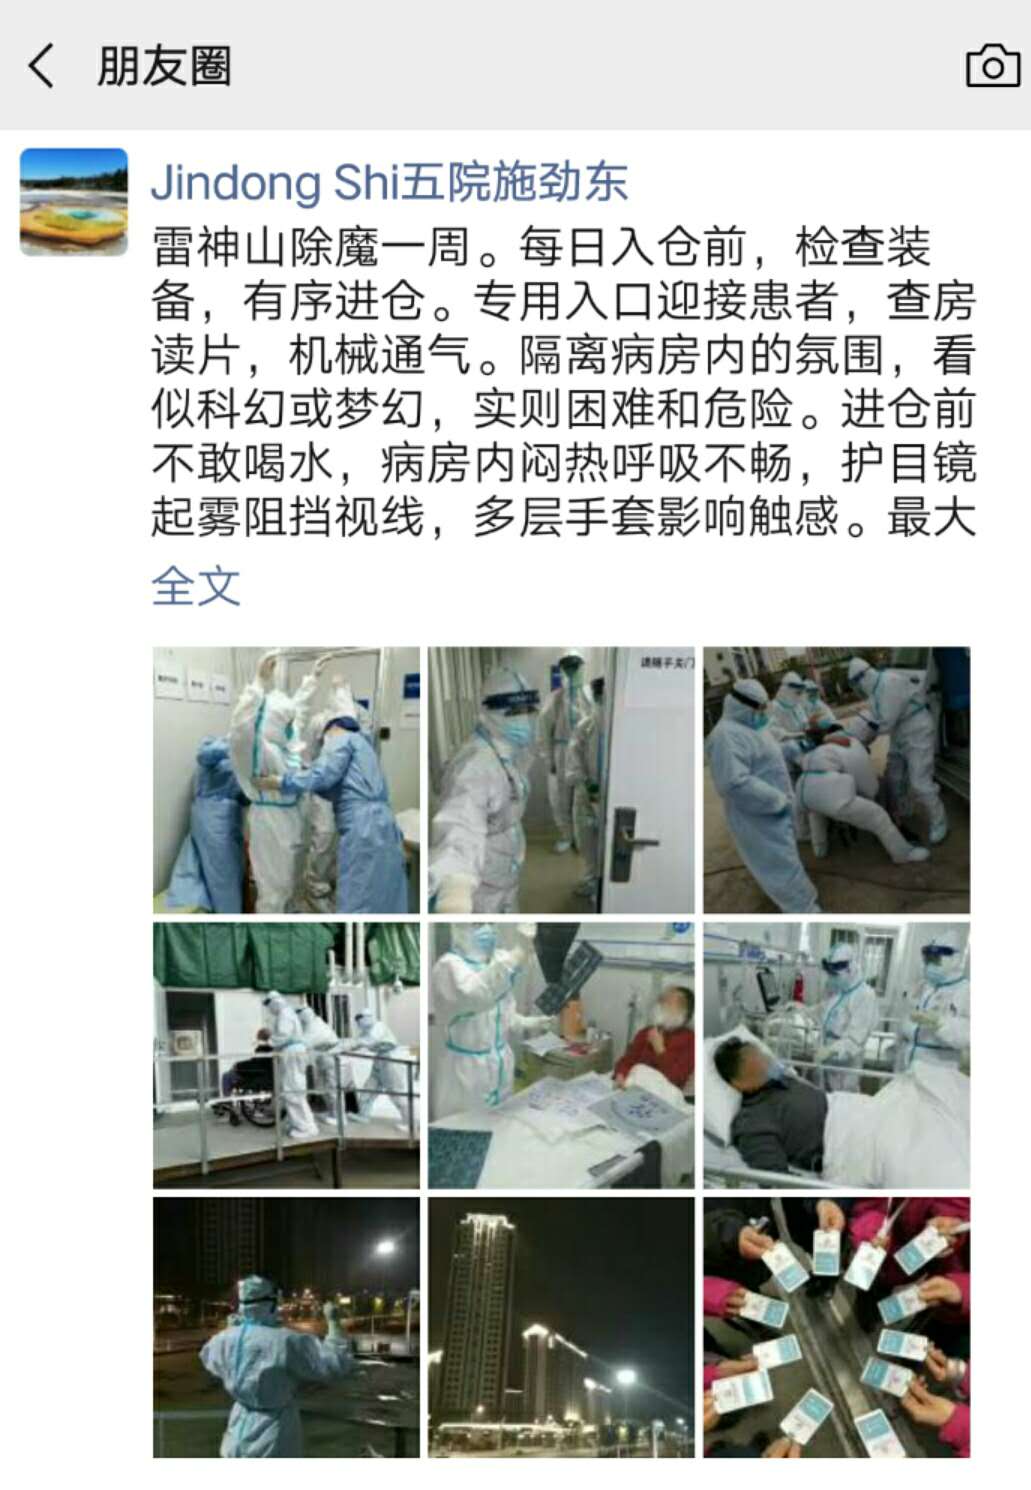 上海五院呼吸科专家施劲东在雷神山经历了什么